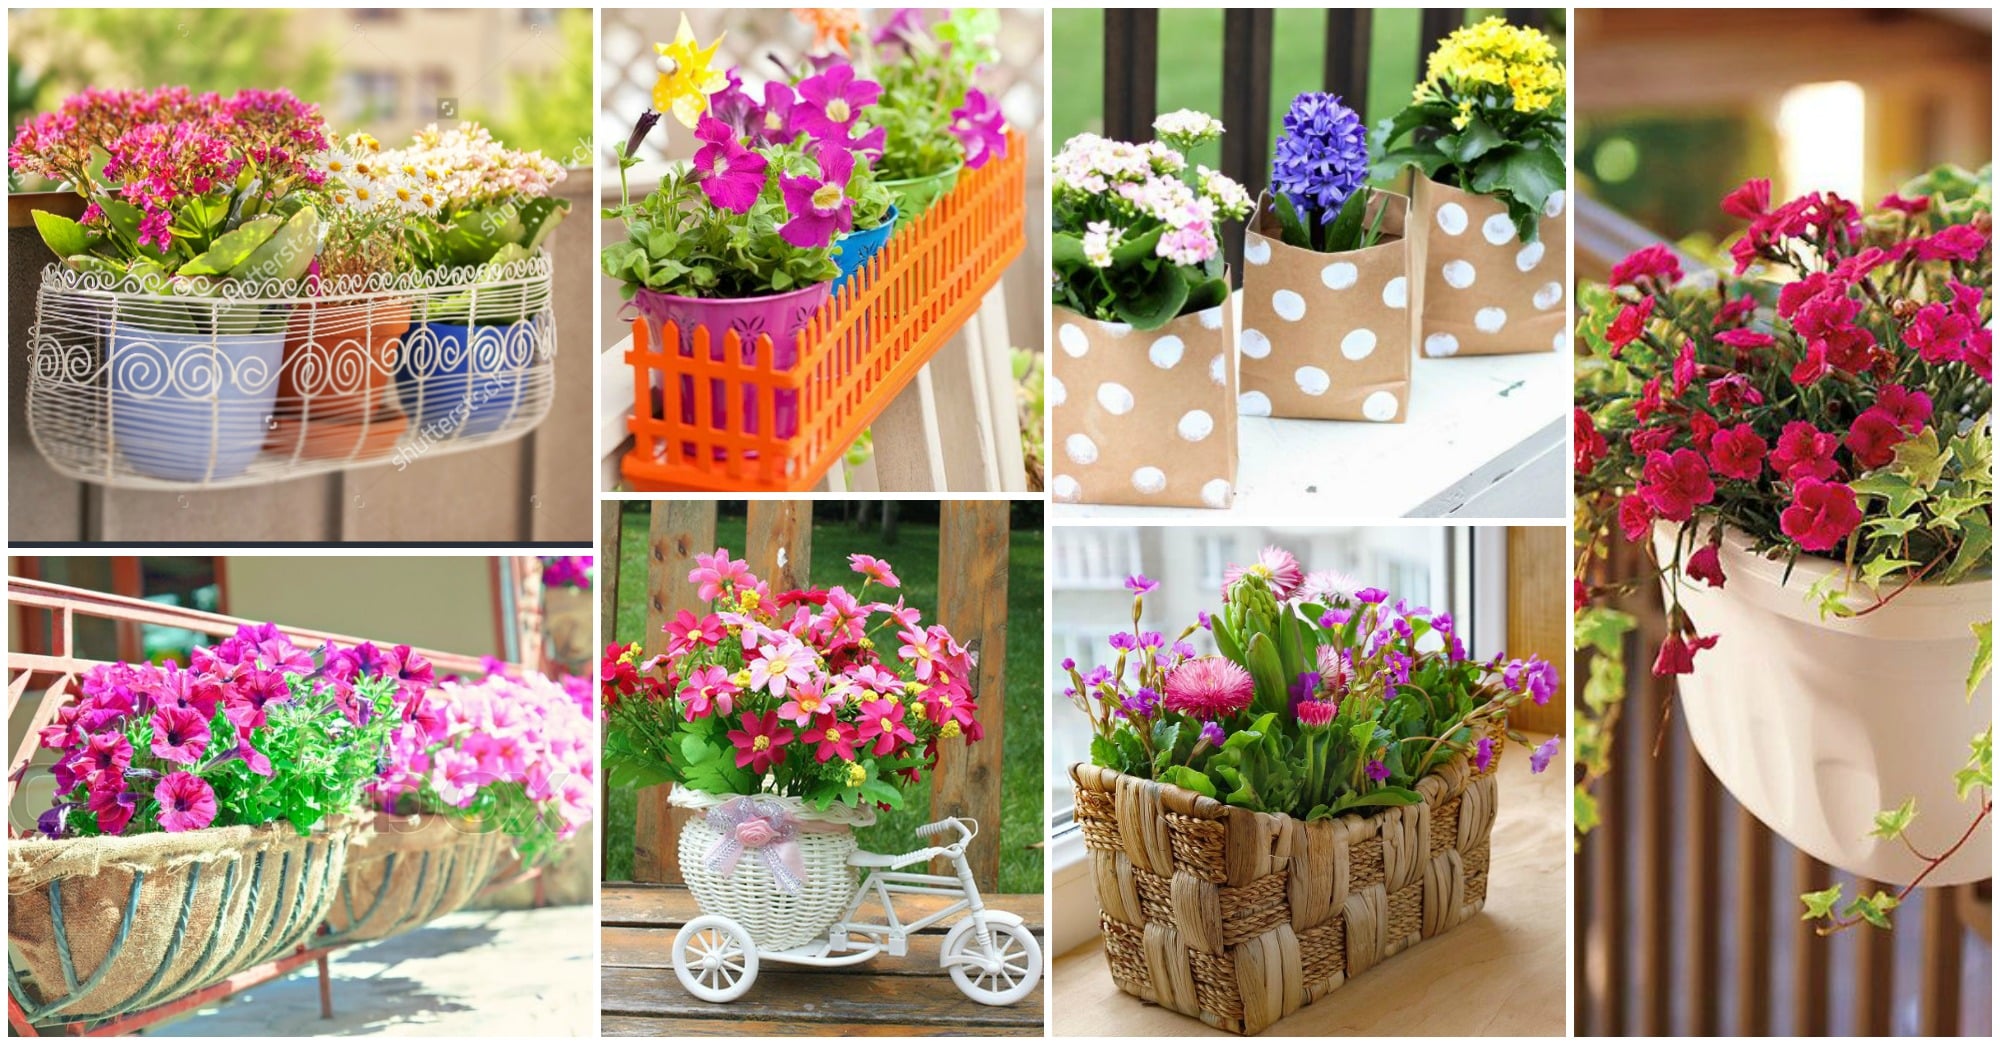 DIY balcon cajas flores